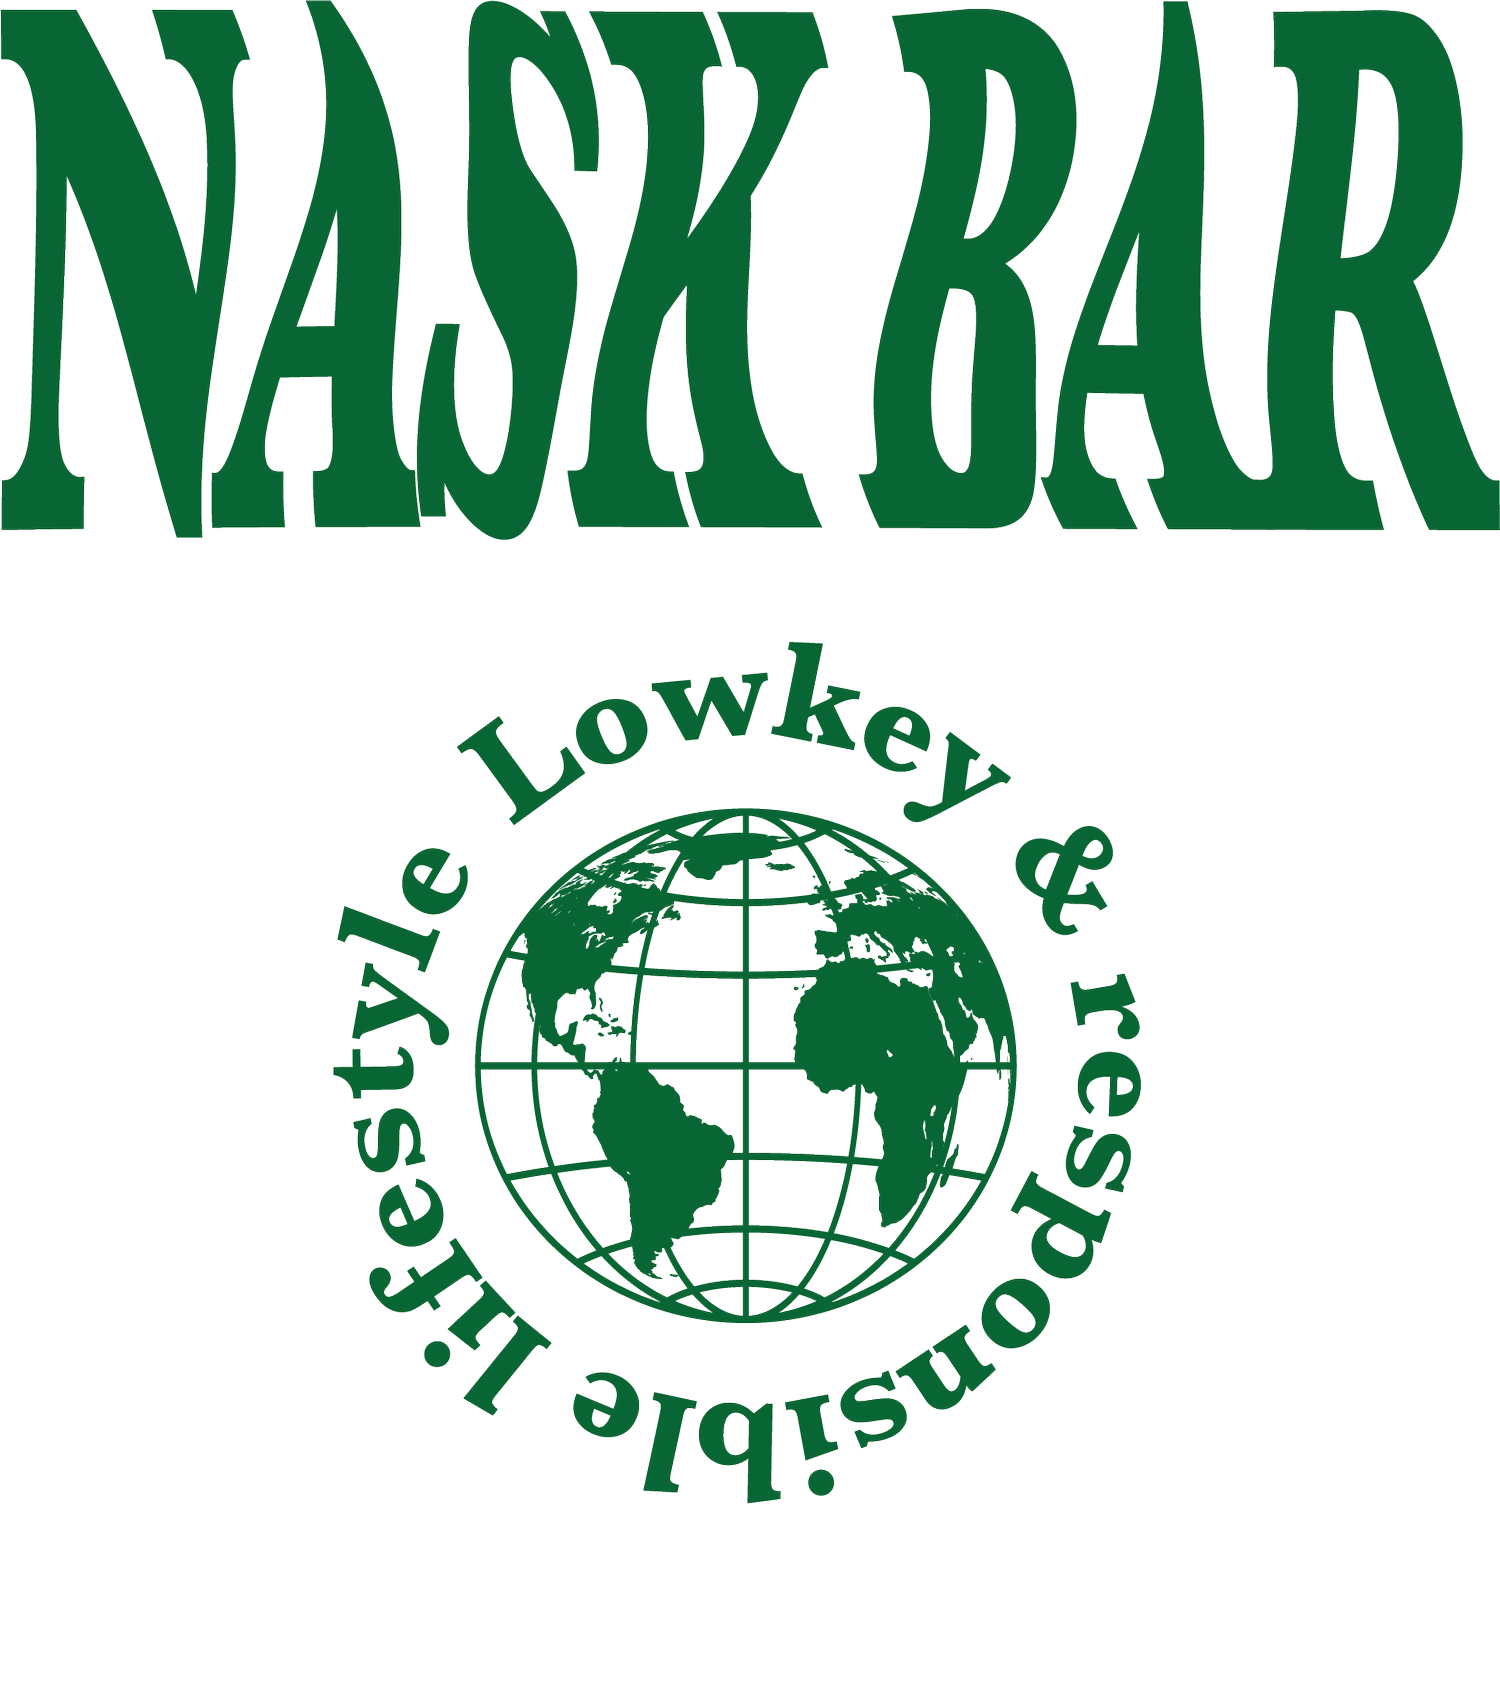 The Nask Bar